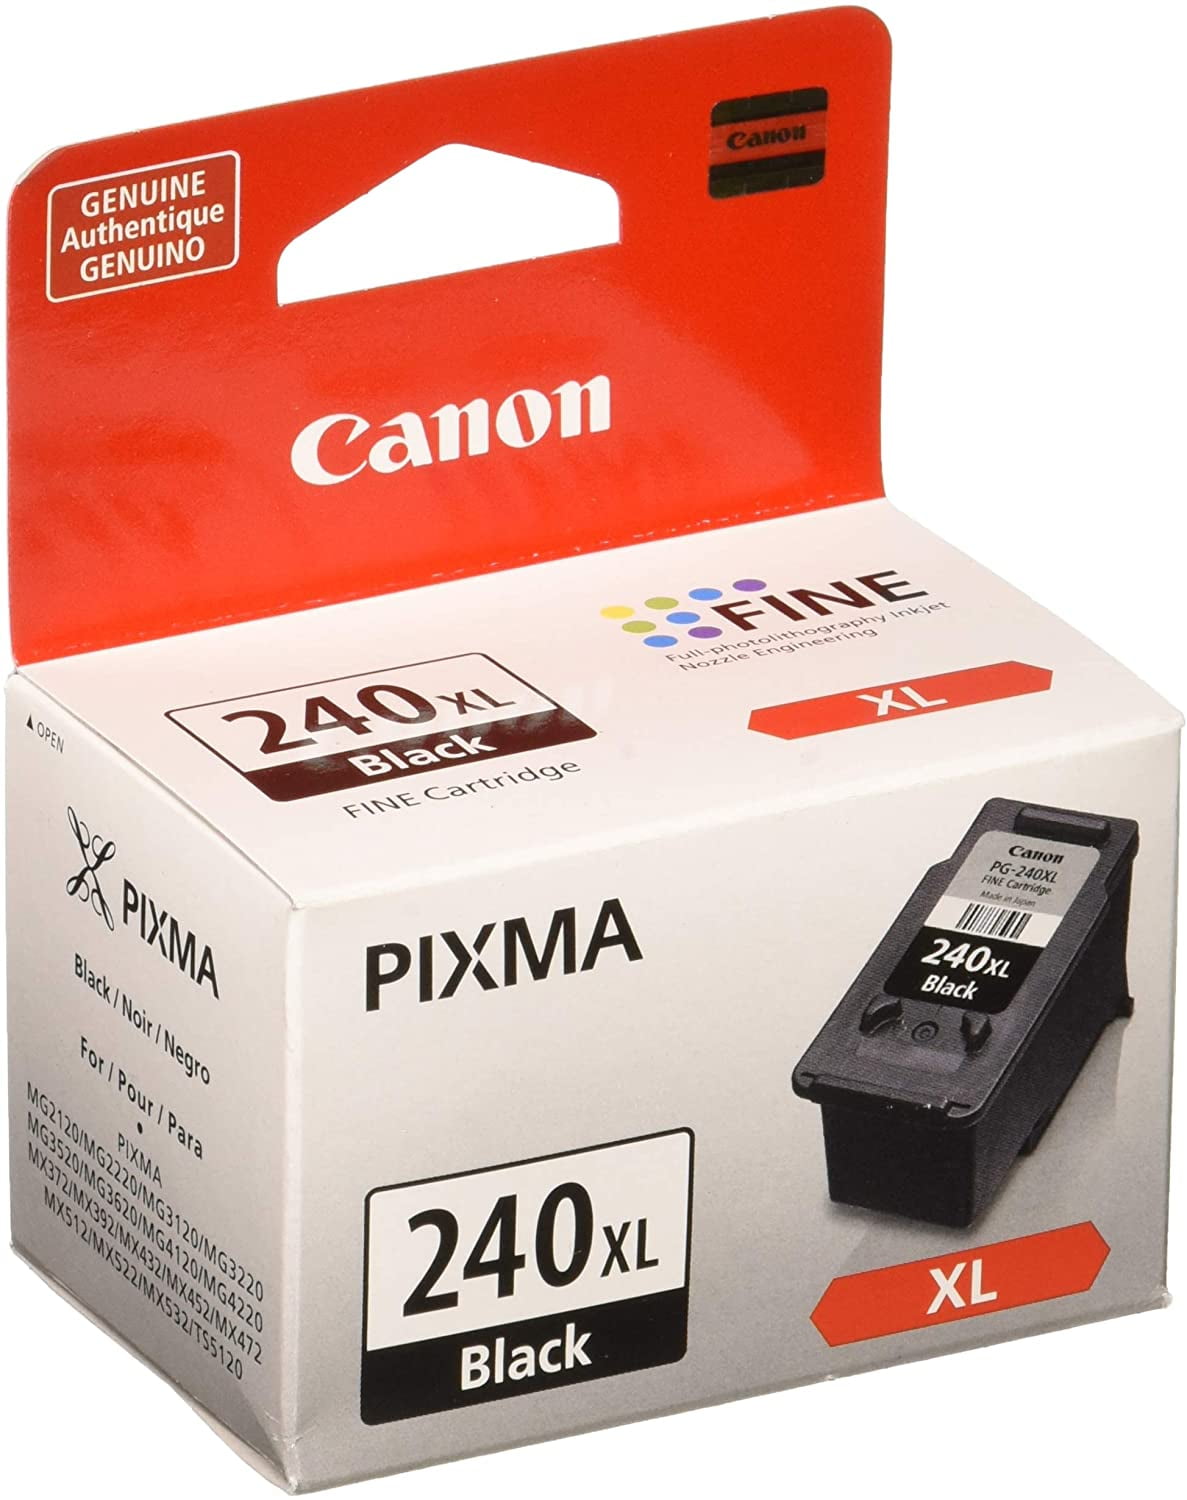 3 Pk PG-240 XL CL-241 XL Ink For Pixma MX452 MX459 MX472 MX512 MX522 MX532 